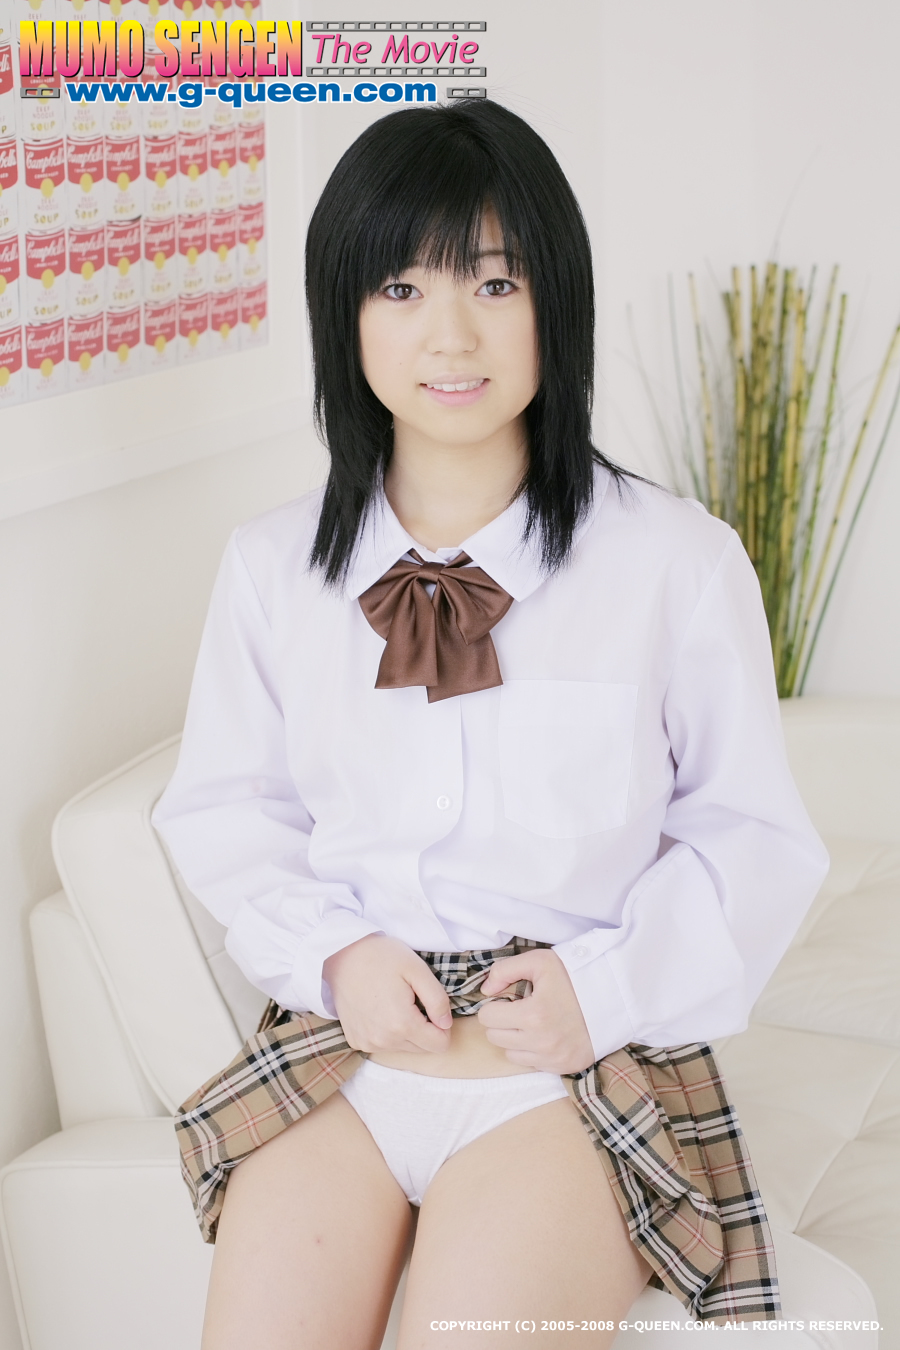 Innocent japanese schoolgirl